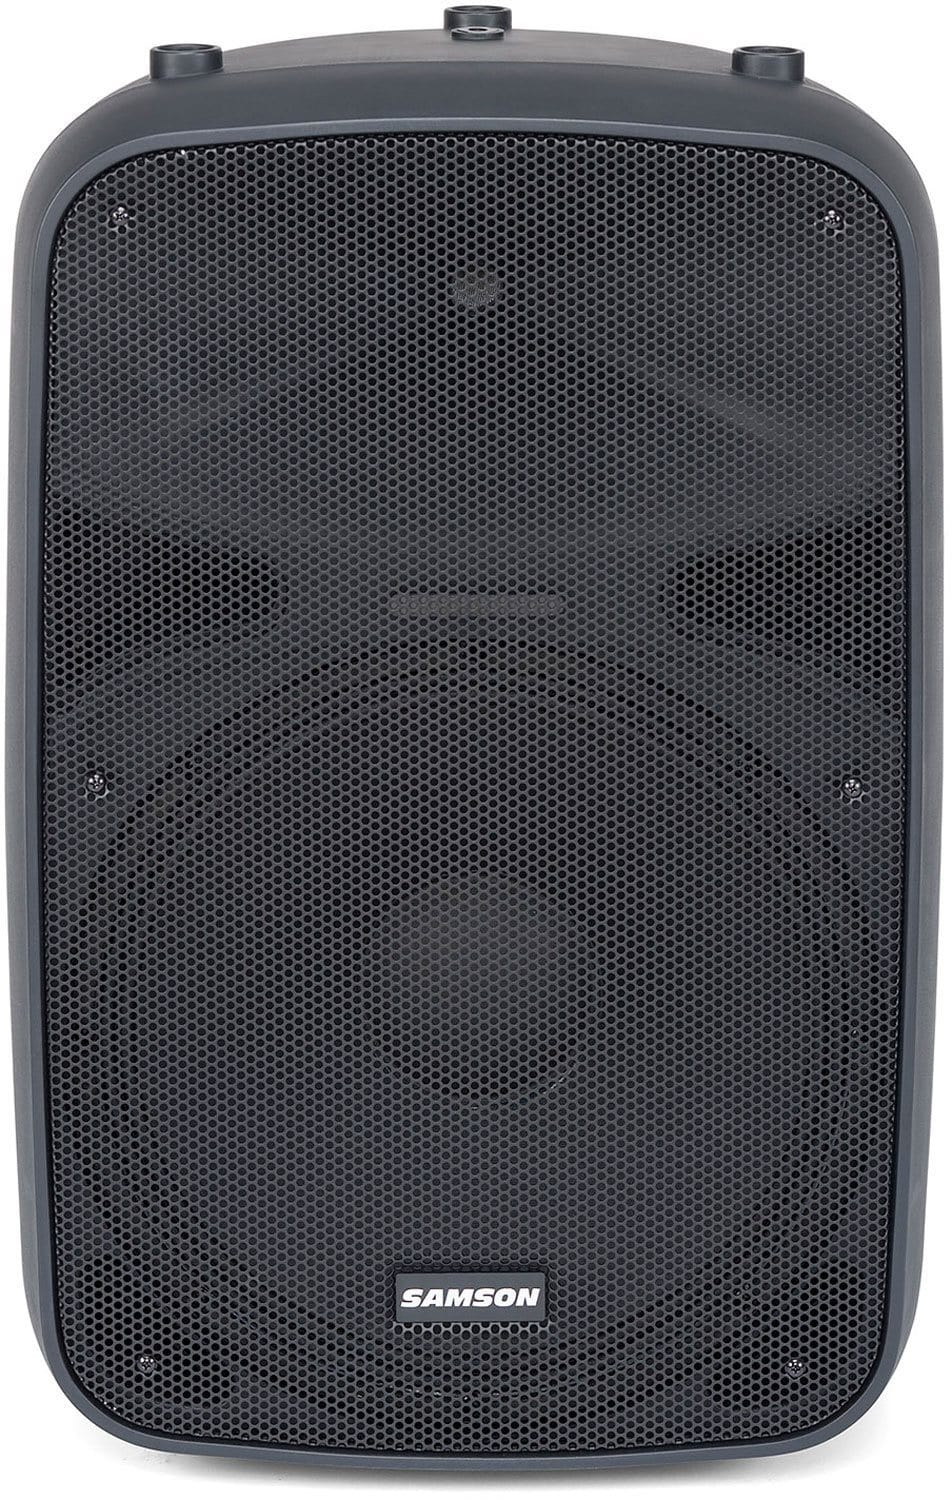 Samson Auro X15D 15-in 1000W 2-Way Powered Speaker - PSSL ProSound and Stage Lighting